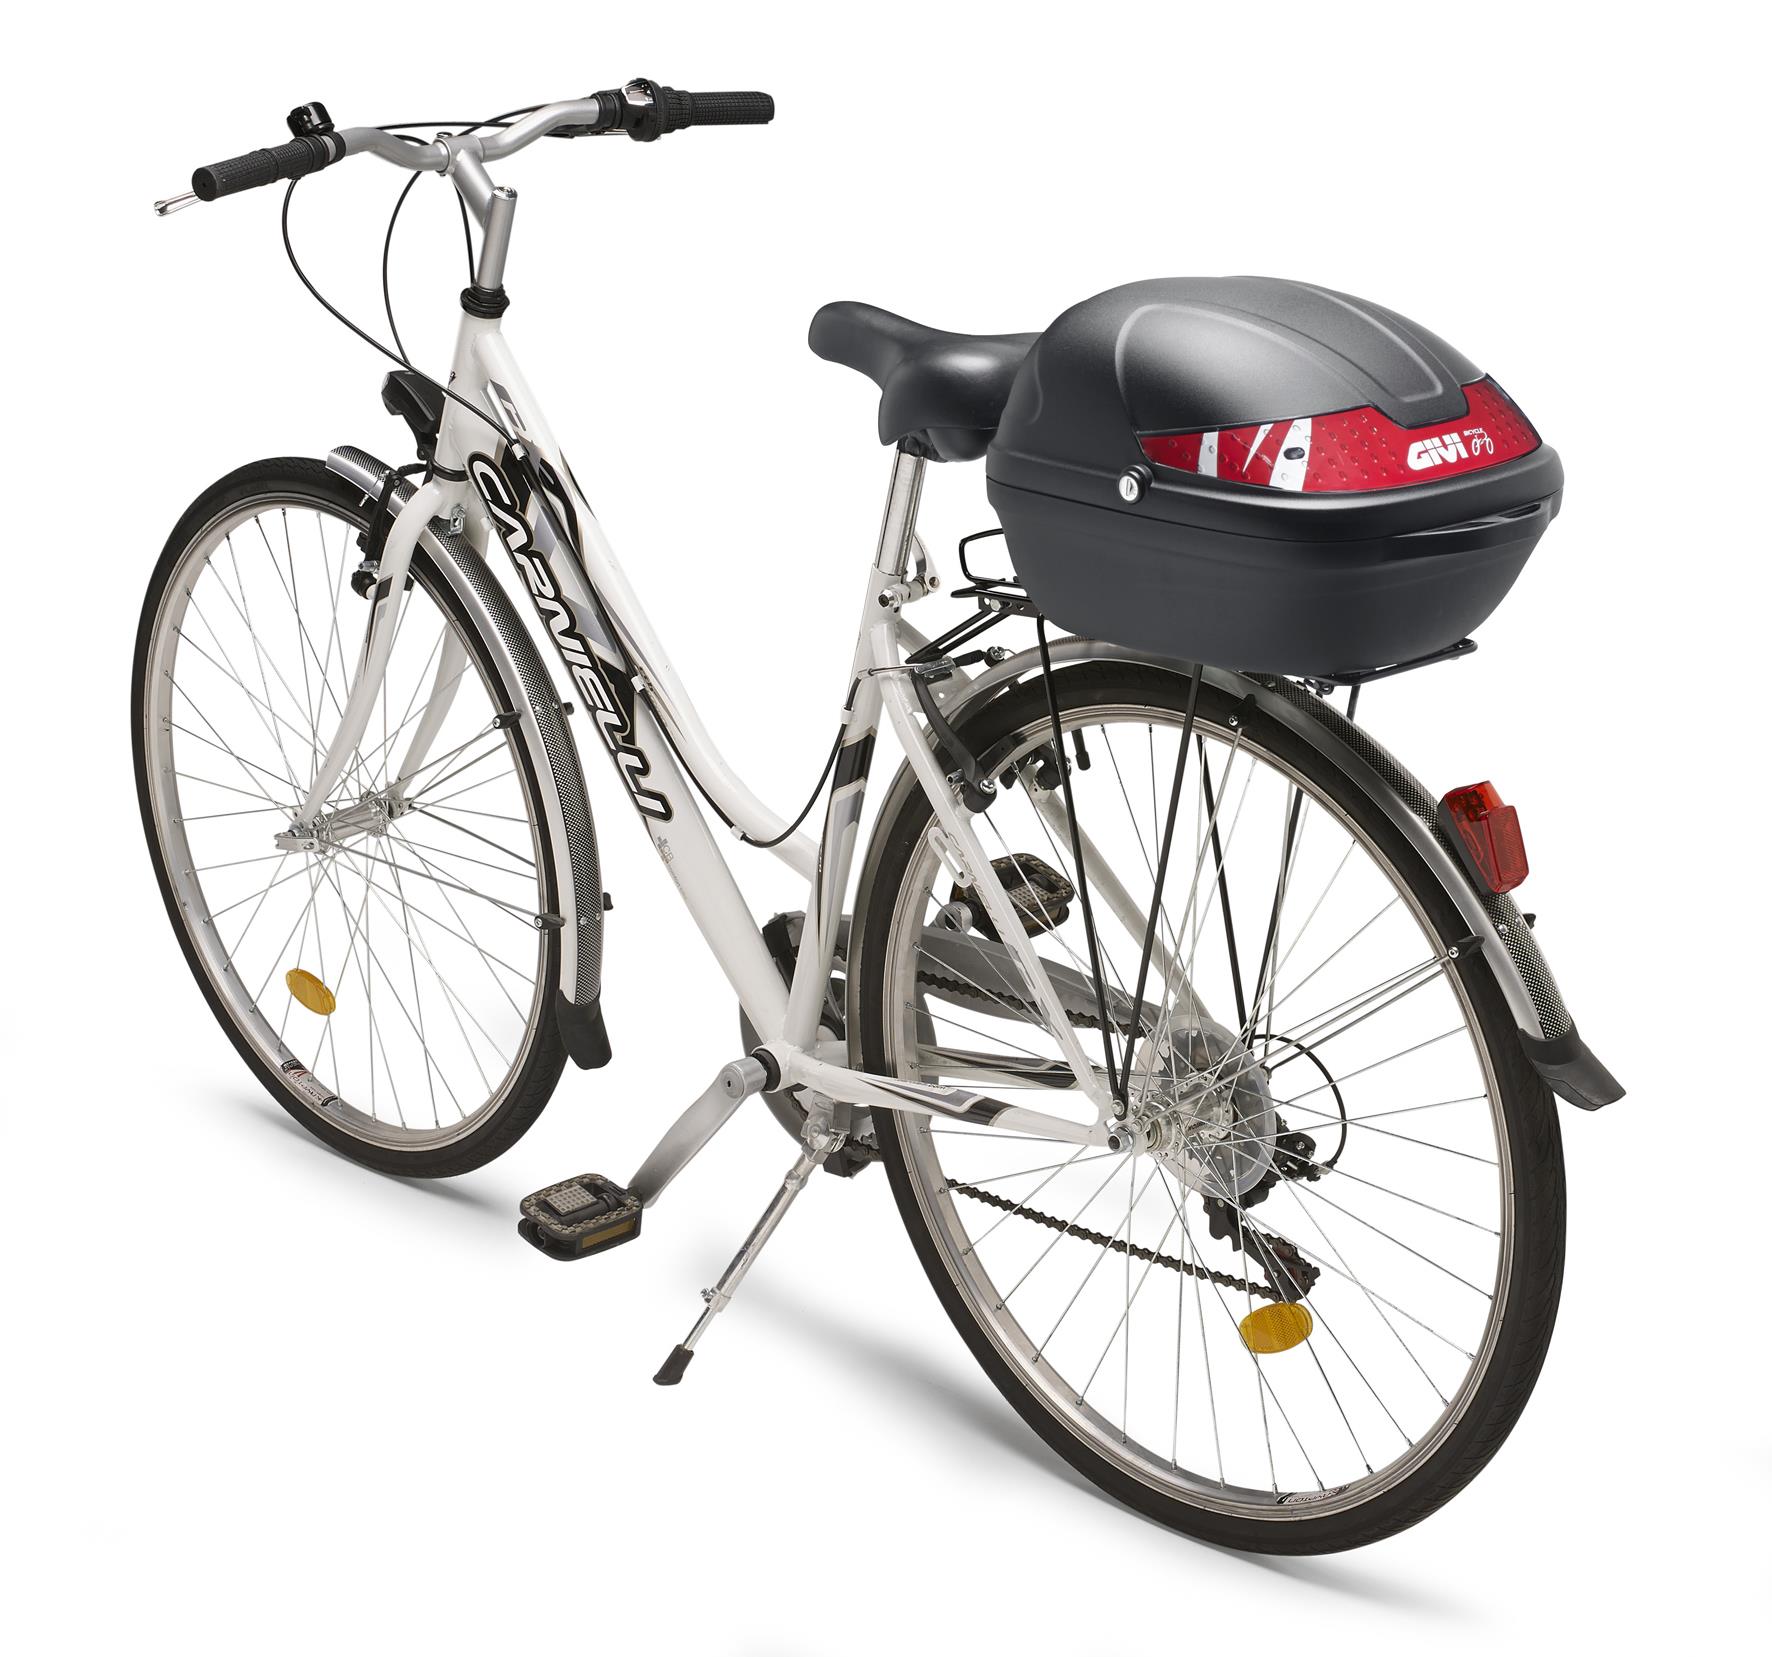 Givi top case pour vélo et EBike BICI noir, 306 mm x 222 mm x 330 mm, batch  m, Luggage carrier, Attachment parts, Bicycle accessories, Bike &  EBike